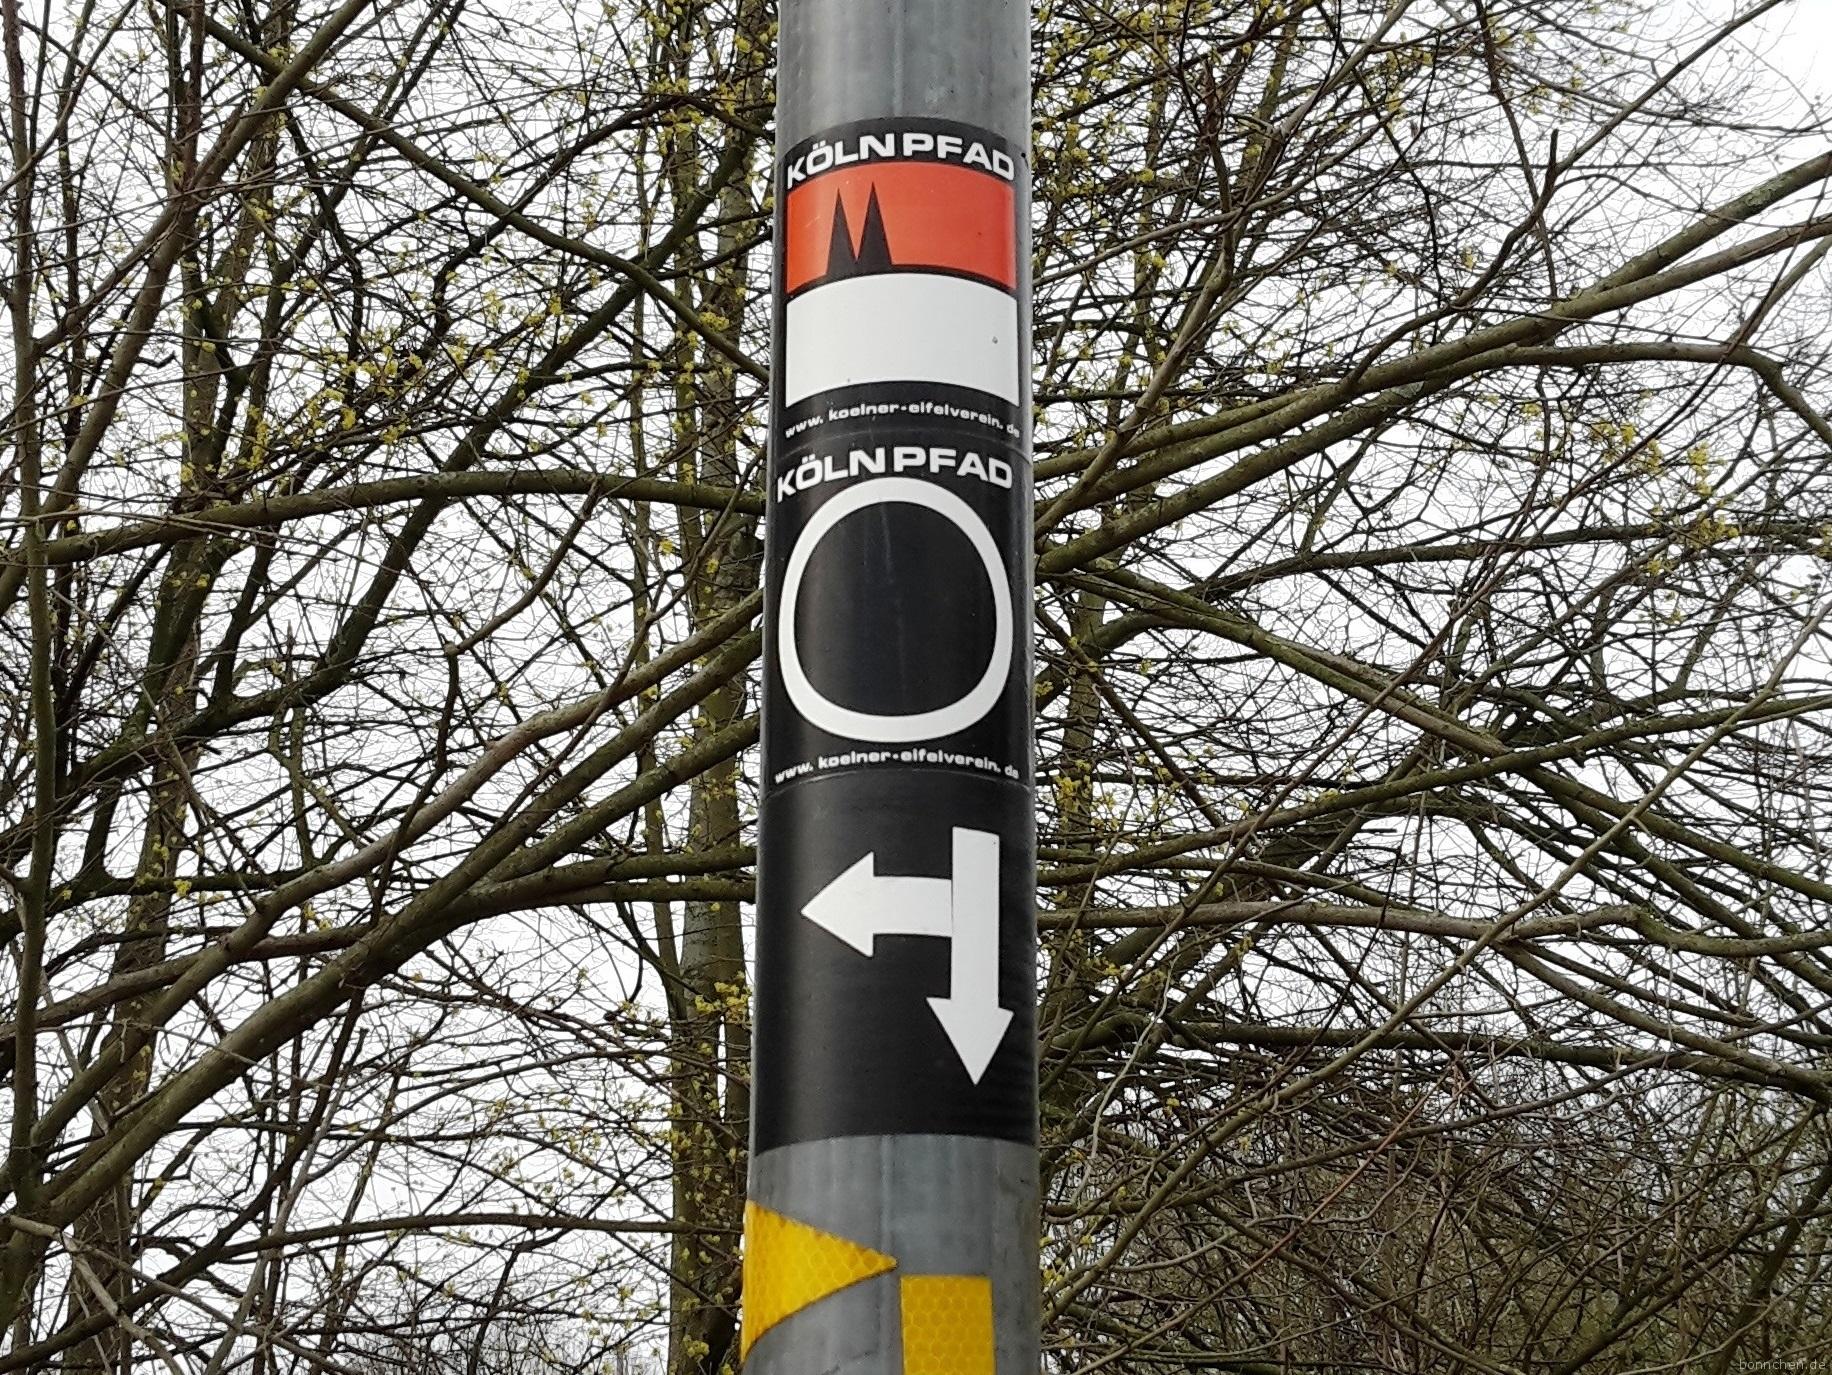 Wanderzeichen von Kölnpfad Etappe 6